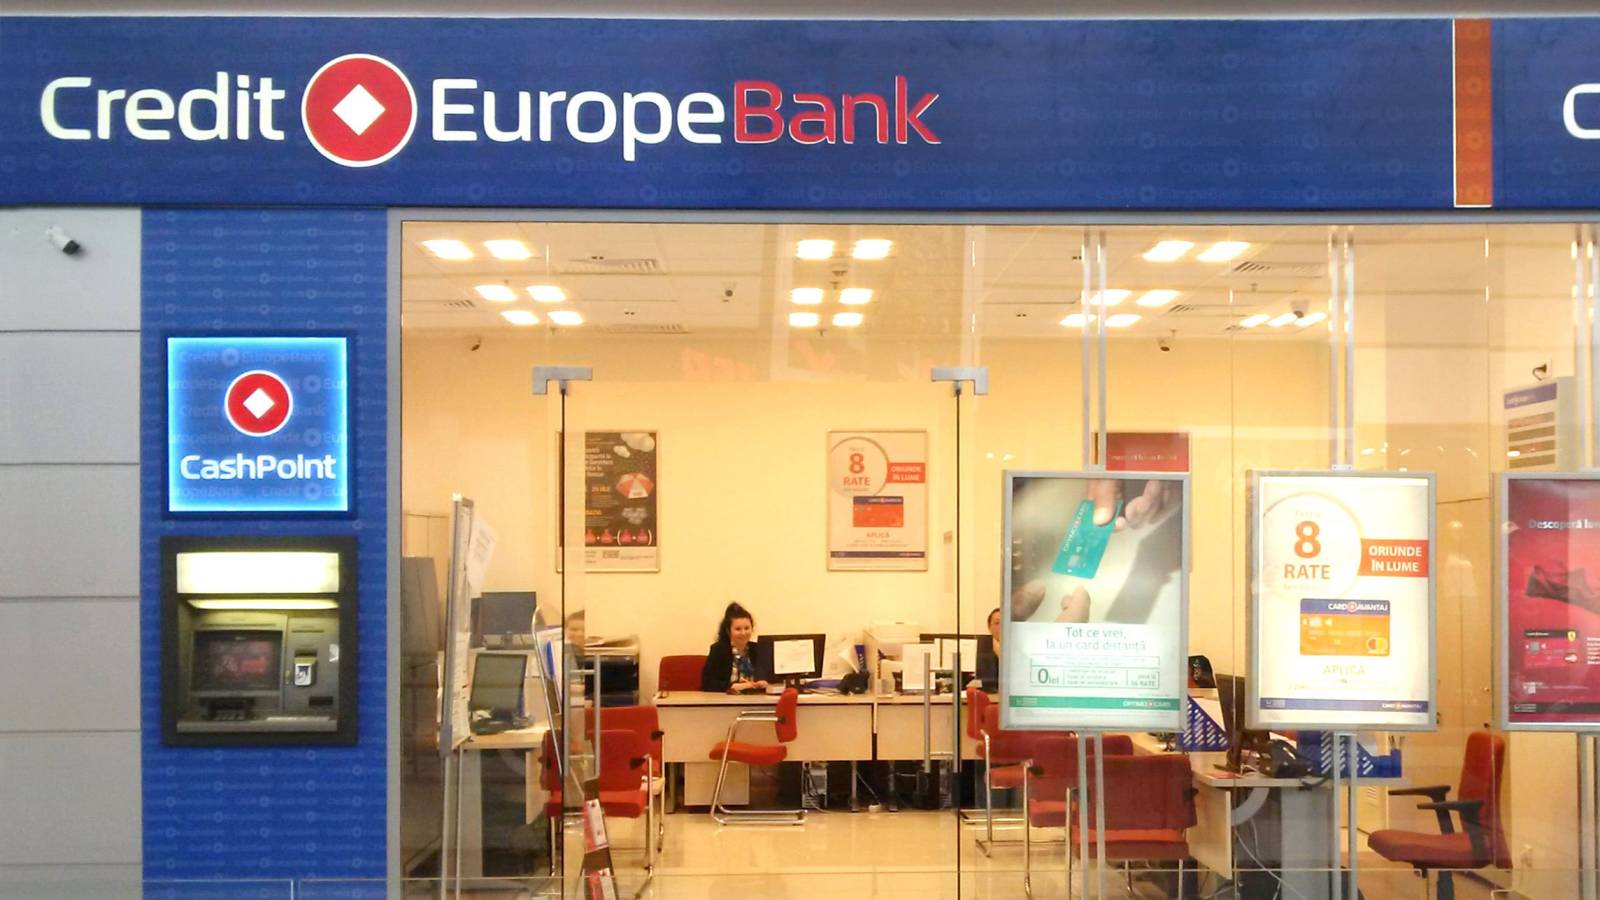 Credit Europe Bank oferă salarii mai mici, comparativ cu marii jucători de pe piață